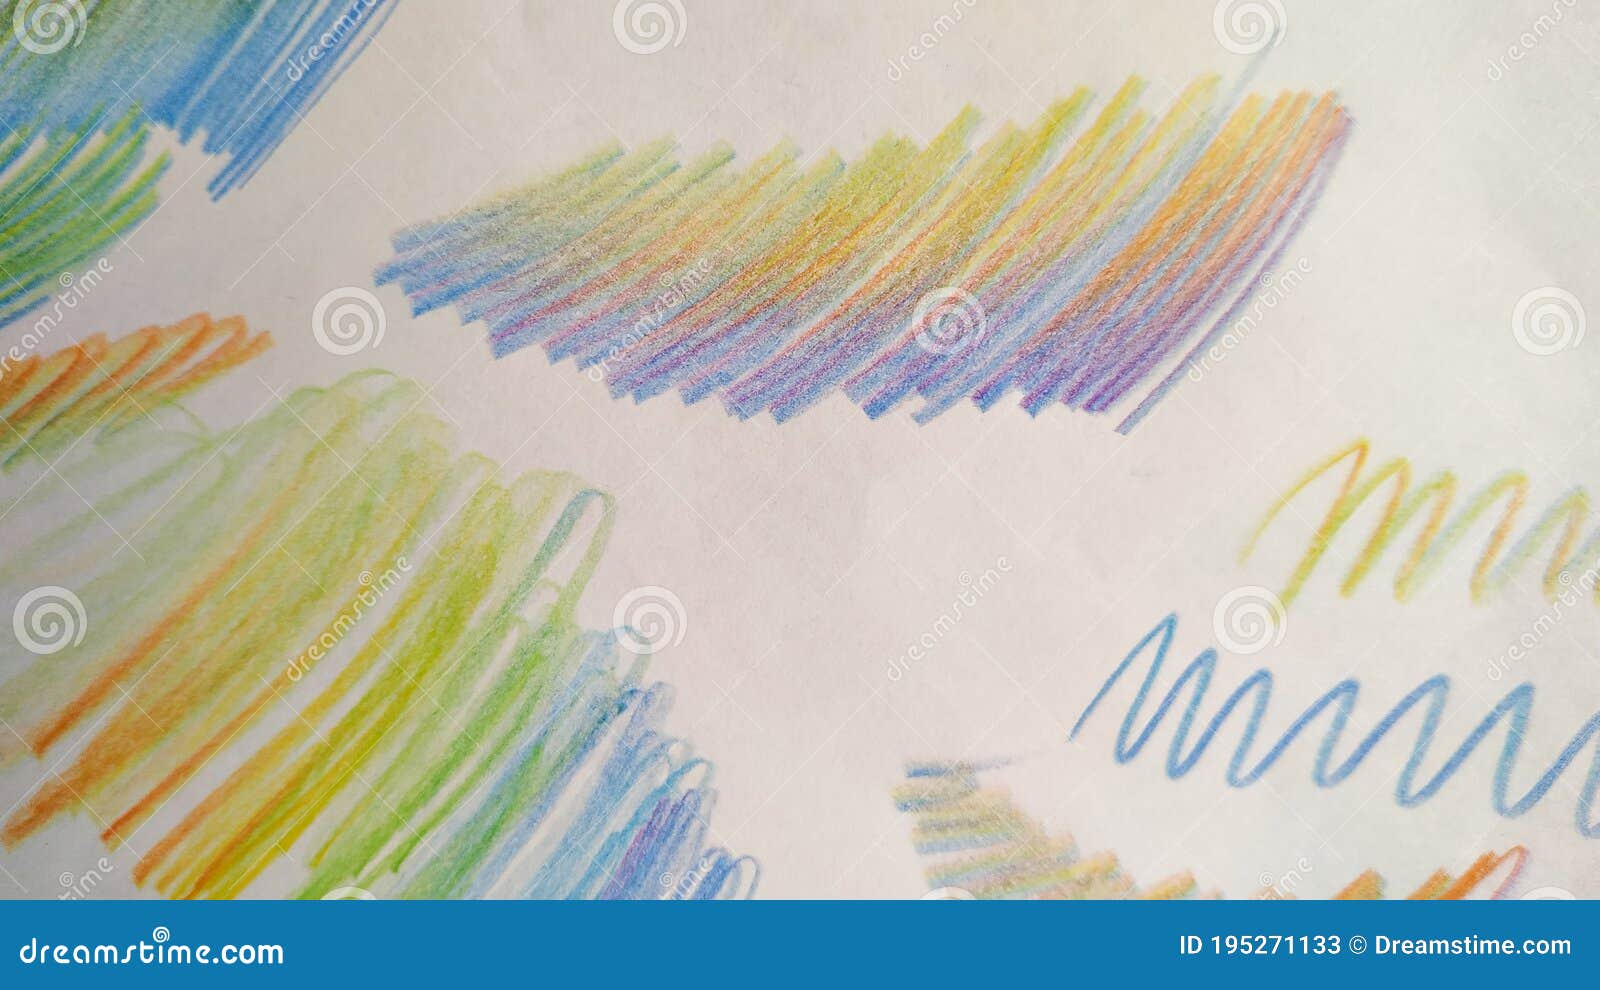 https://thumbs.dreamstime.com/z/gribouillage-de-brosse-mod%C3%A8le-vert-et-blanc-d-%C3%A9cole-papier-peint-abstrait-fond-color%C3%A9-du-stylo-arc-en-ciel-balai-texture-jaune-195271133.jpg